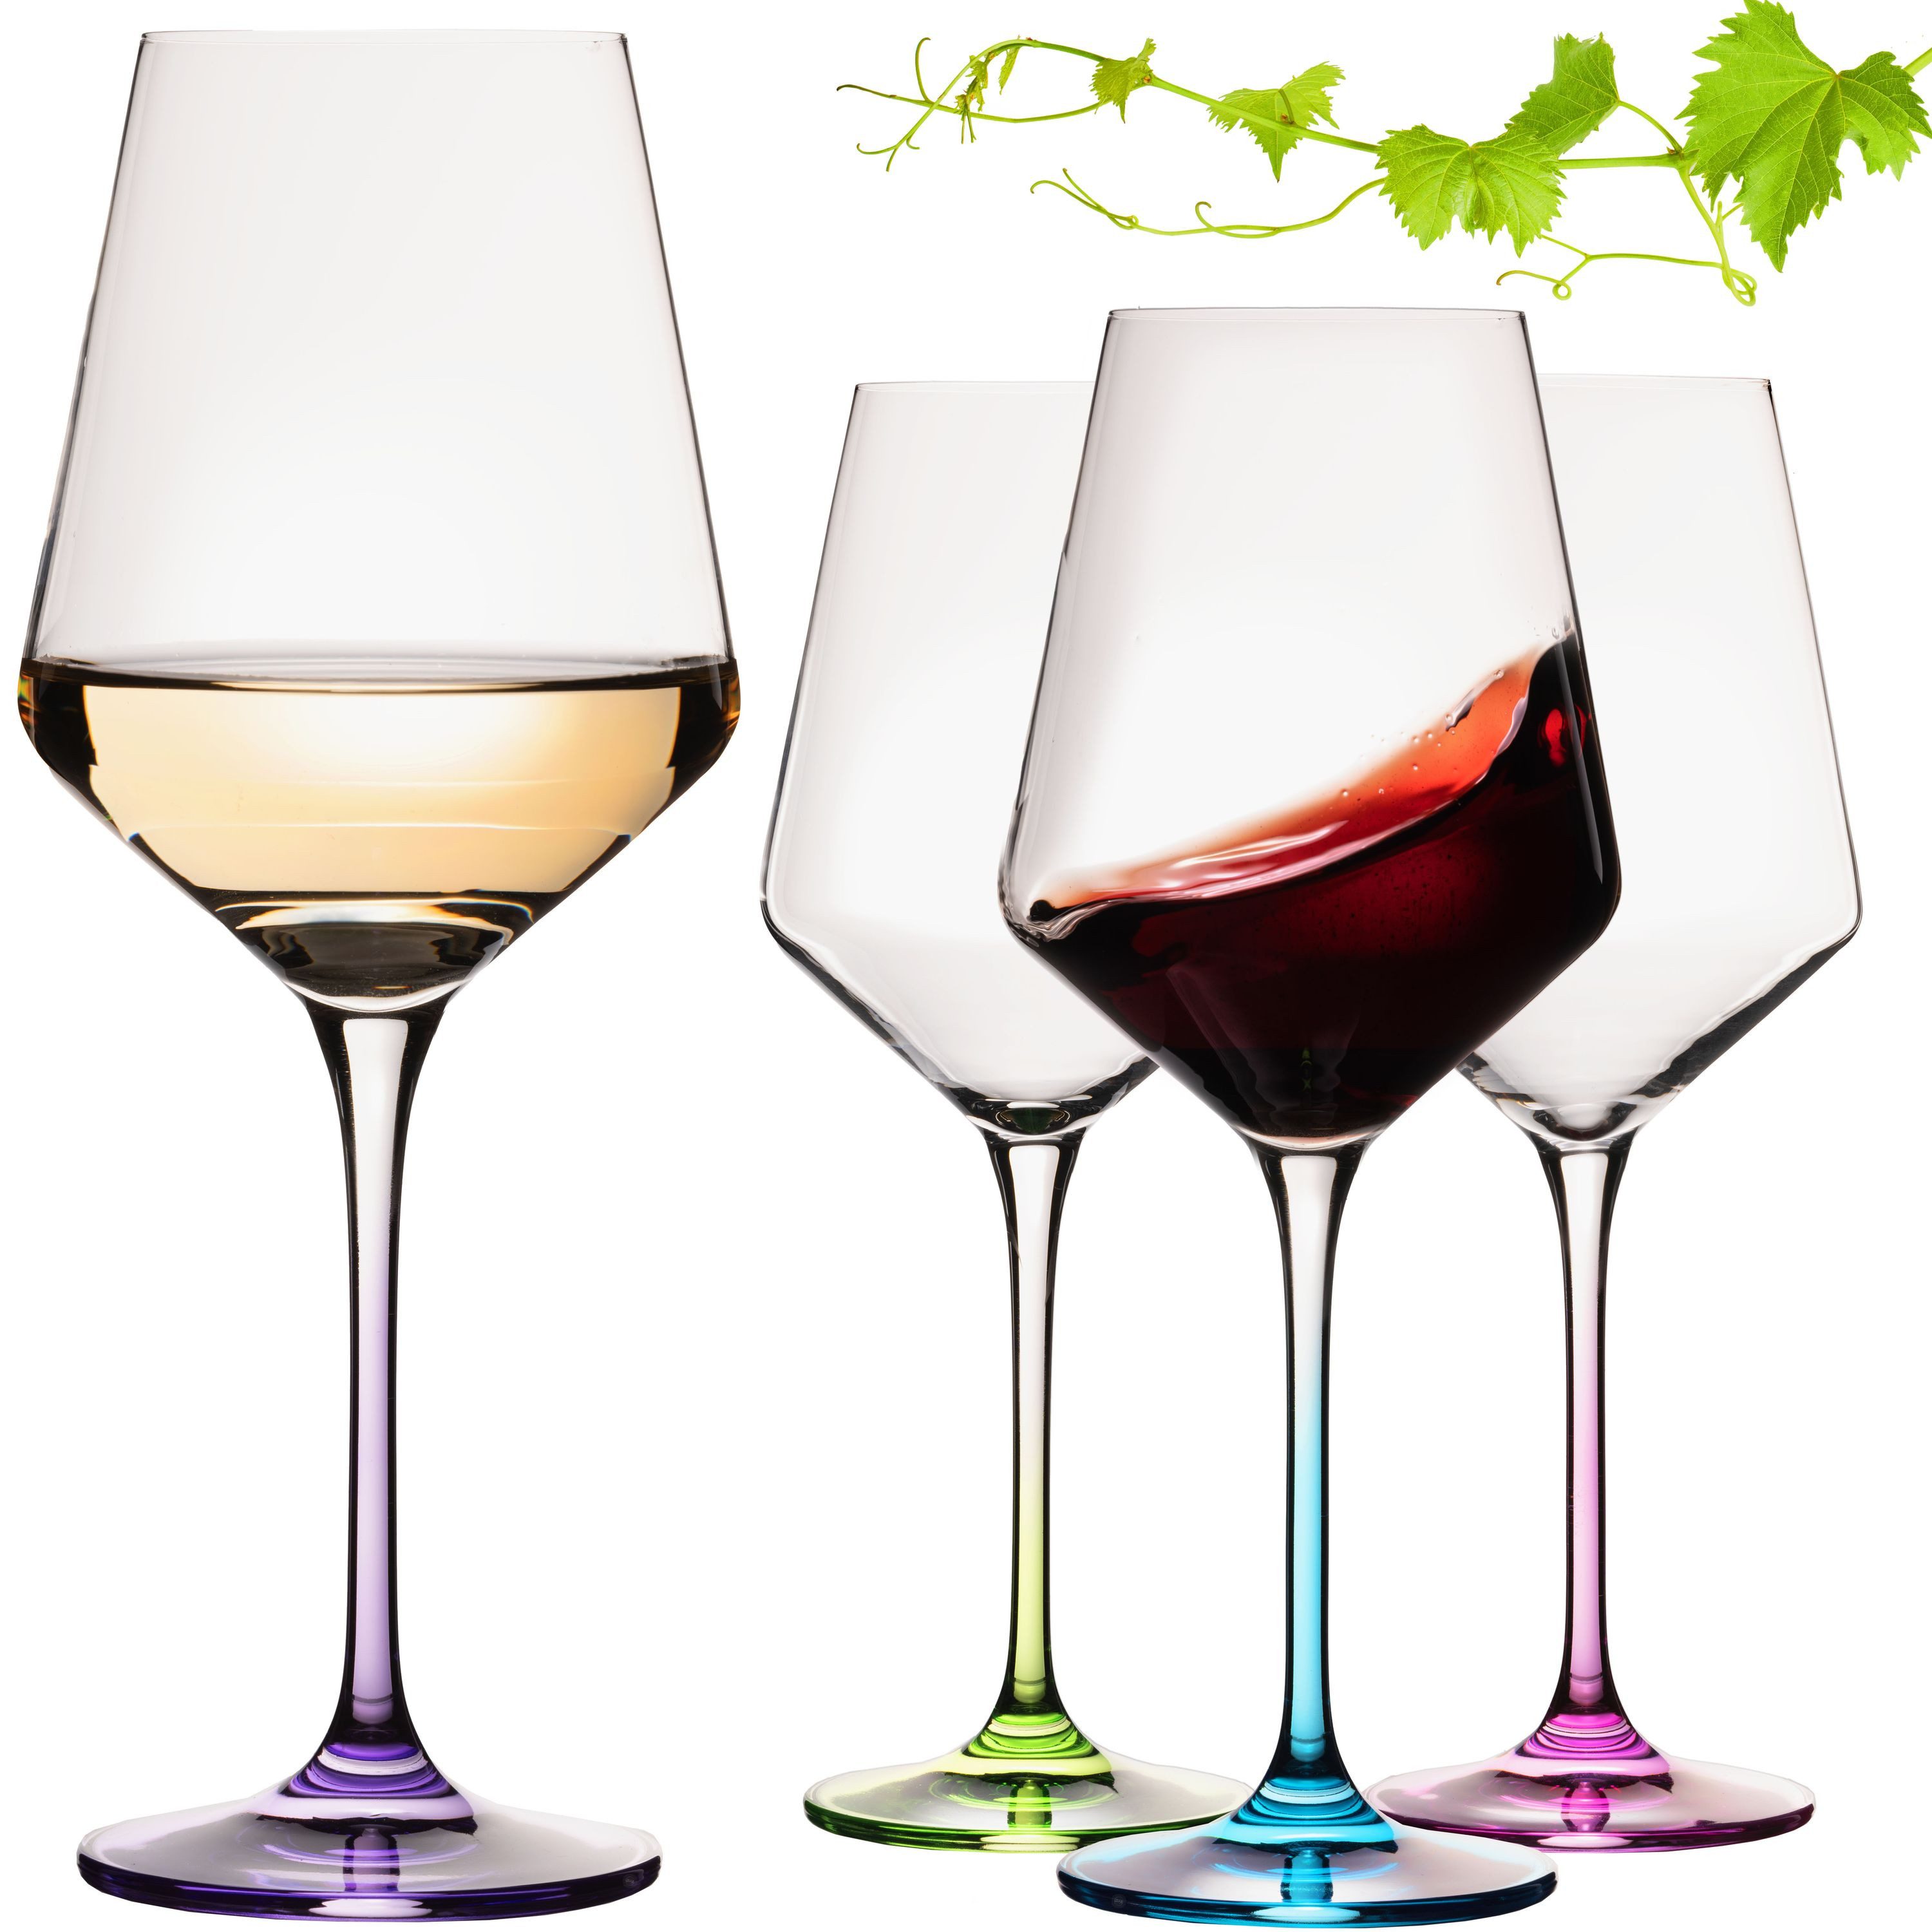 IMPERIAL glass Weinglas Weingläser bunt 450ml "Athen" Set 4-Teilig, Crystalline Glas, Universalweingläser aus Crystalline Glas Weißweinglas Rotweinglas